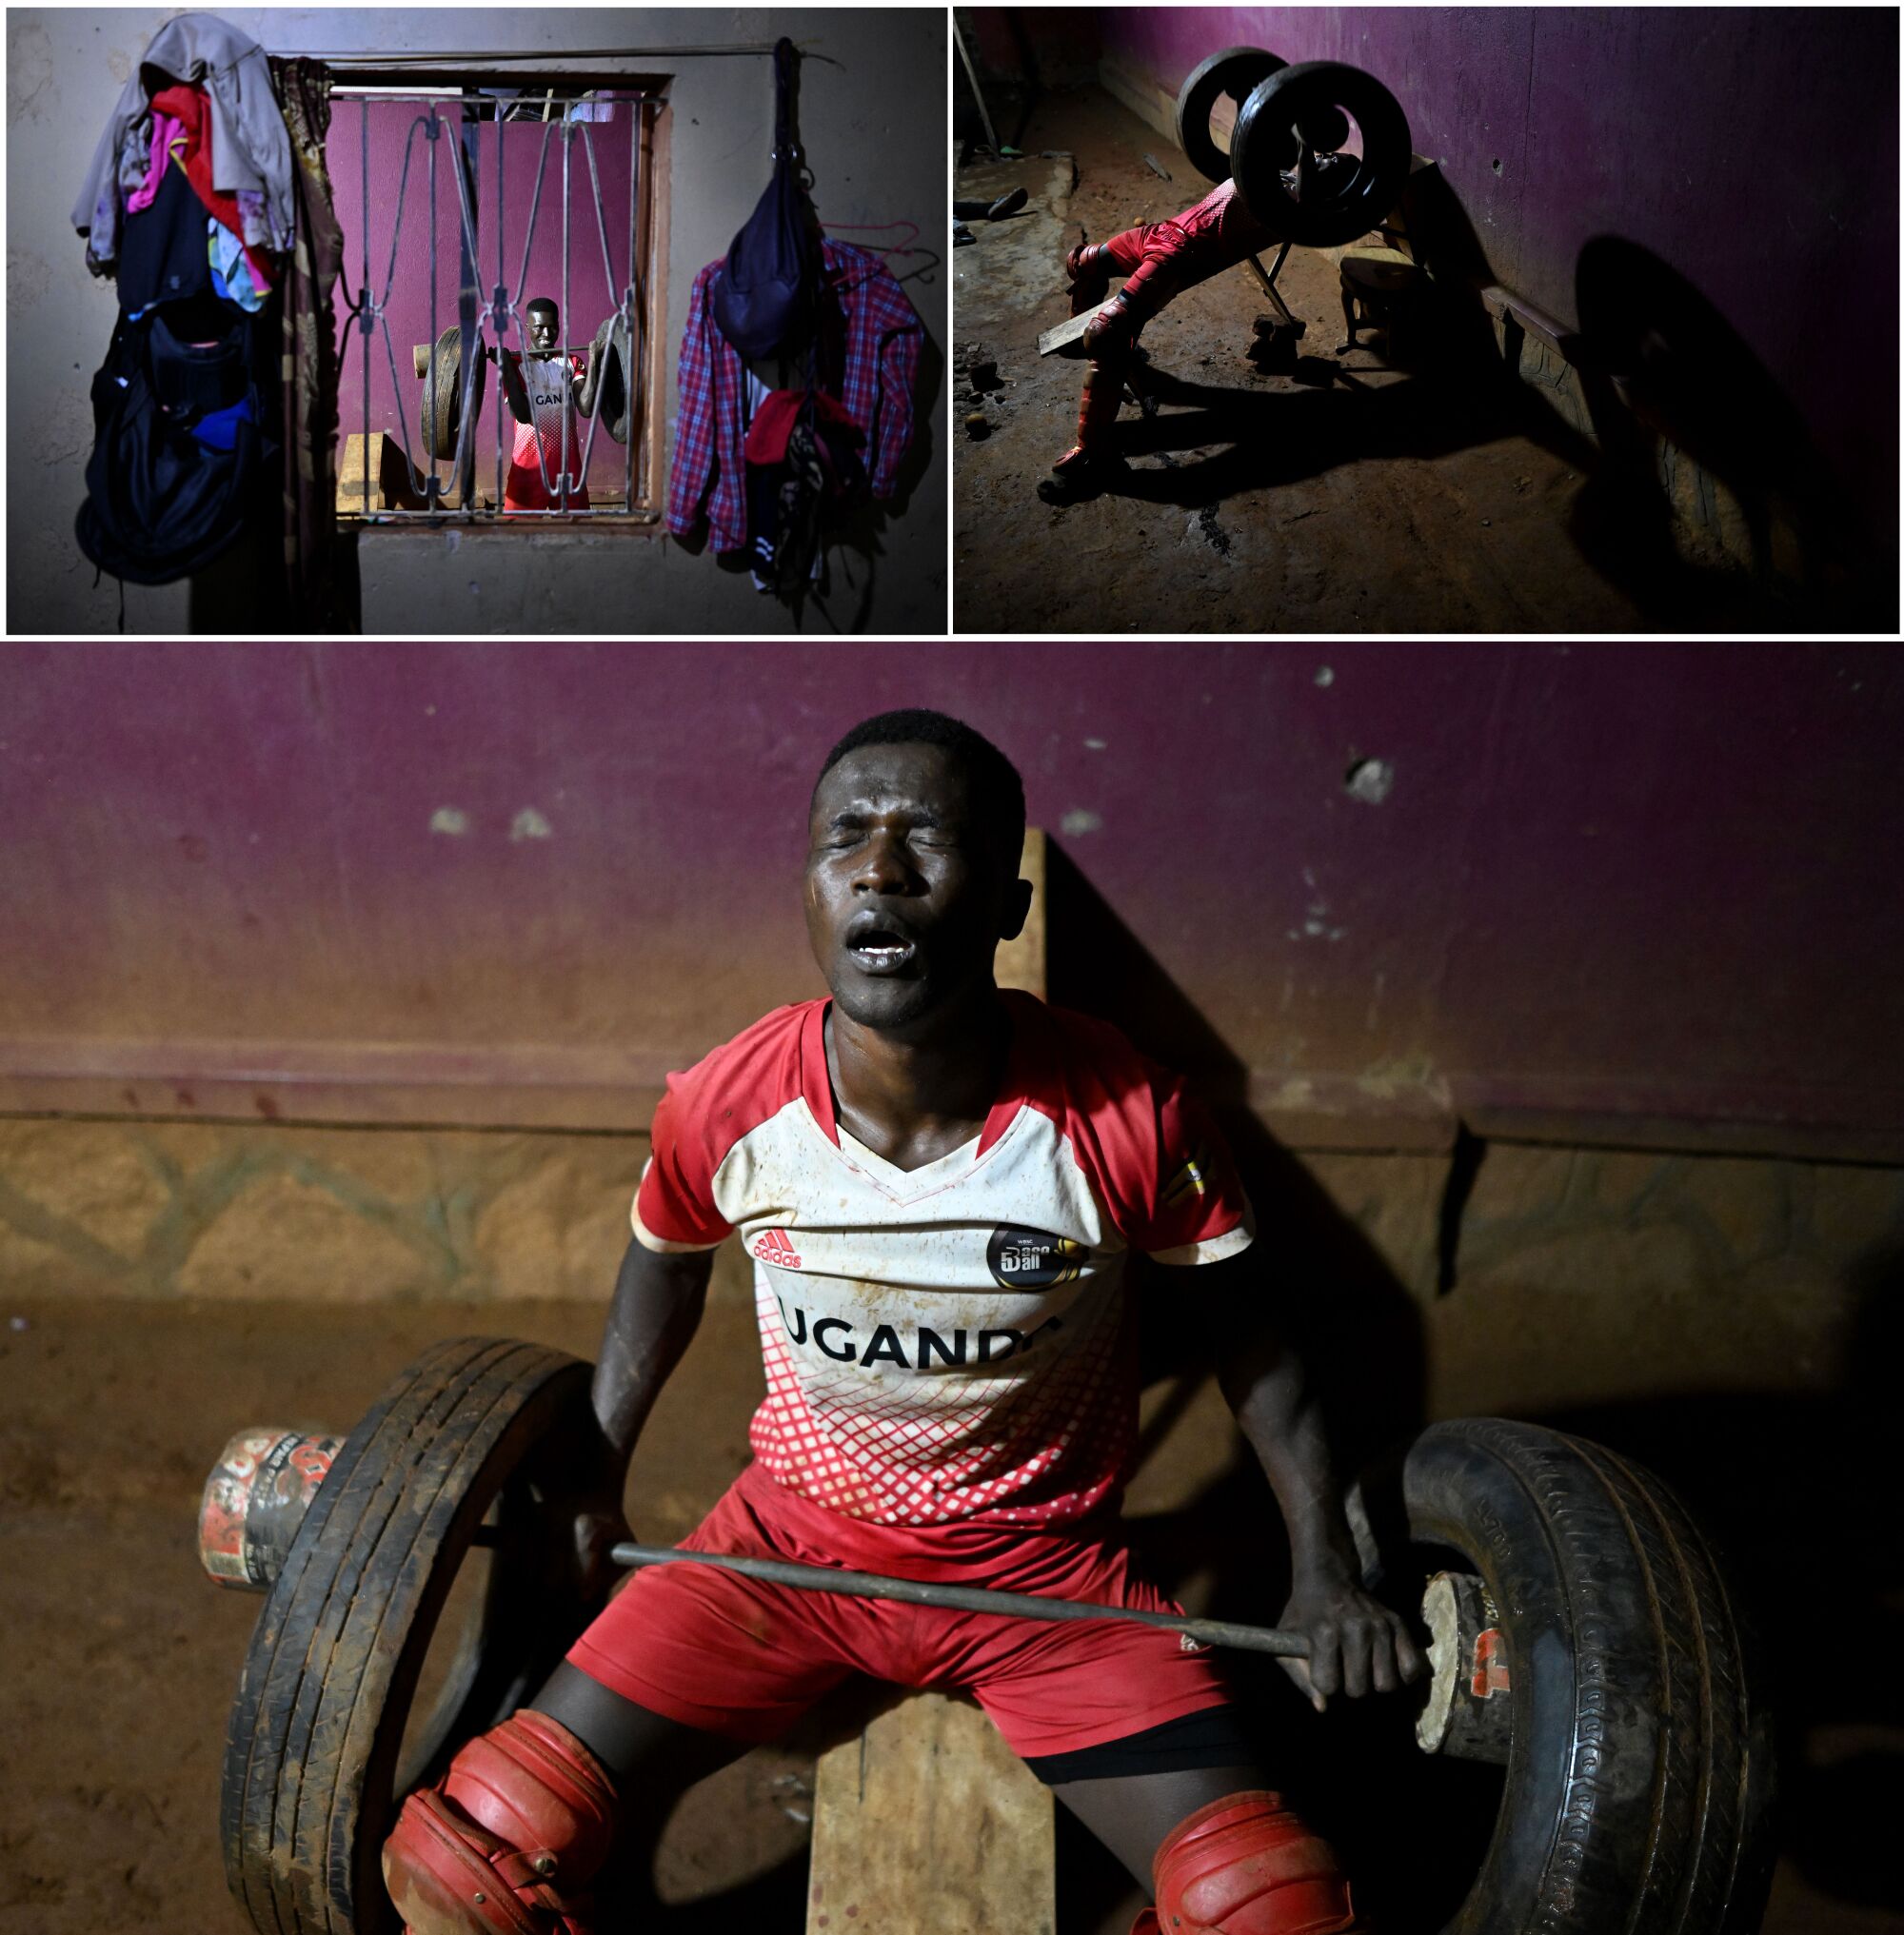 Dennis Kasumba ćwiczy do późna w nocy ze starymi oponami przed swoim domem